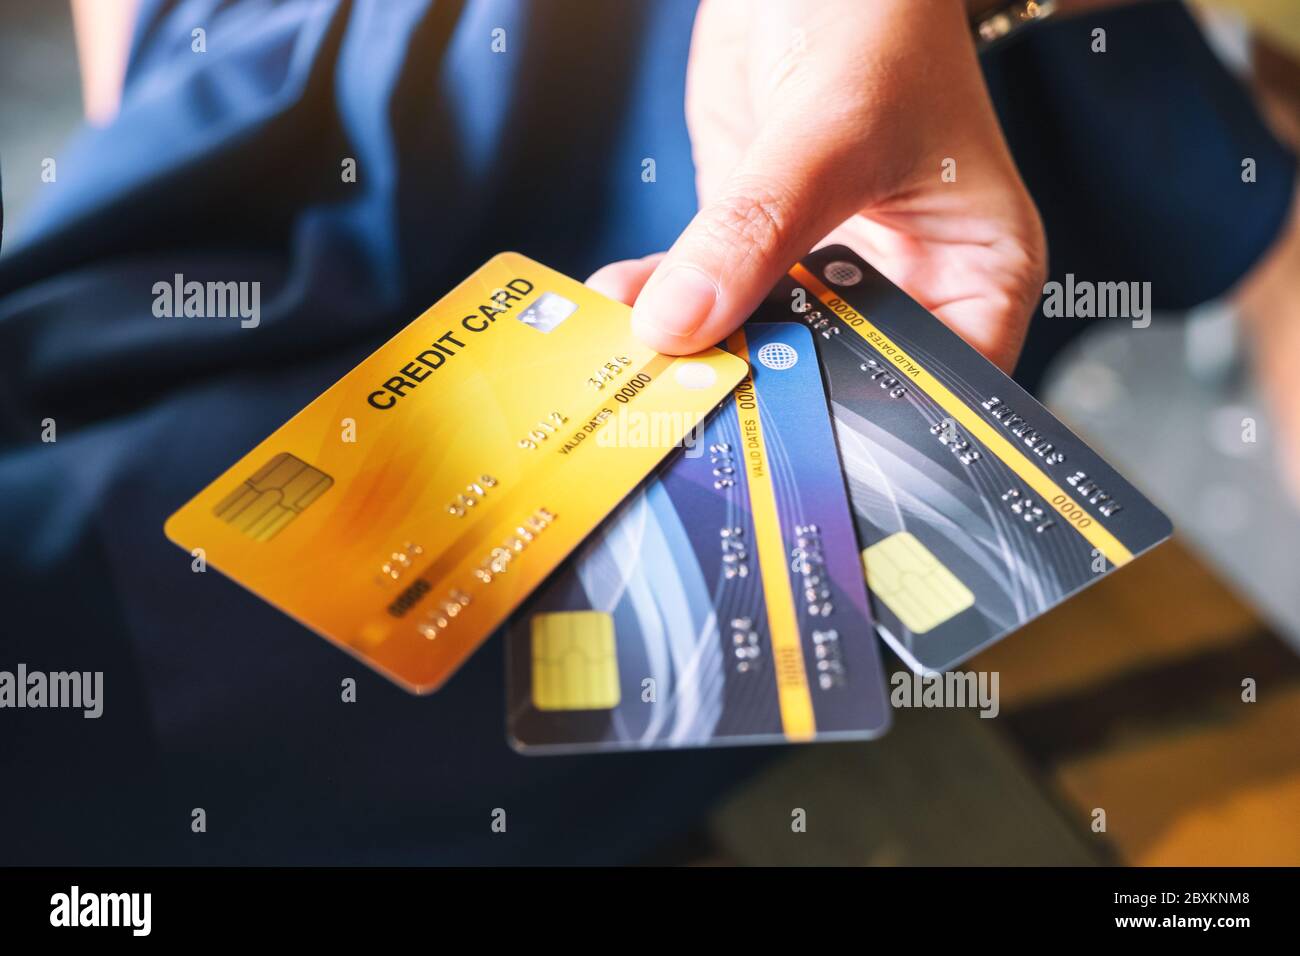 Выбрать выгодную кредитную карту